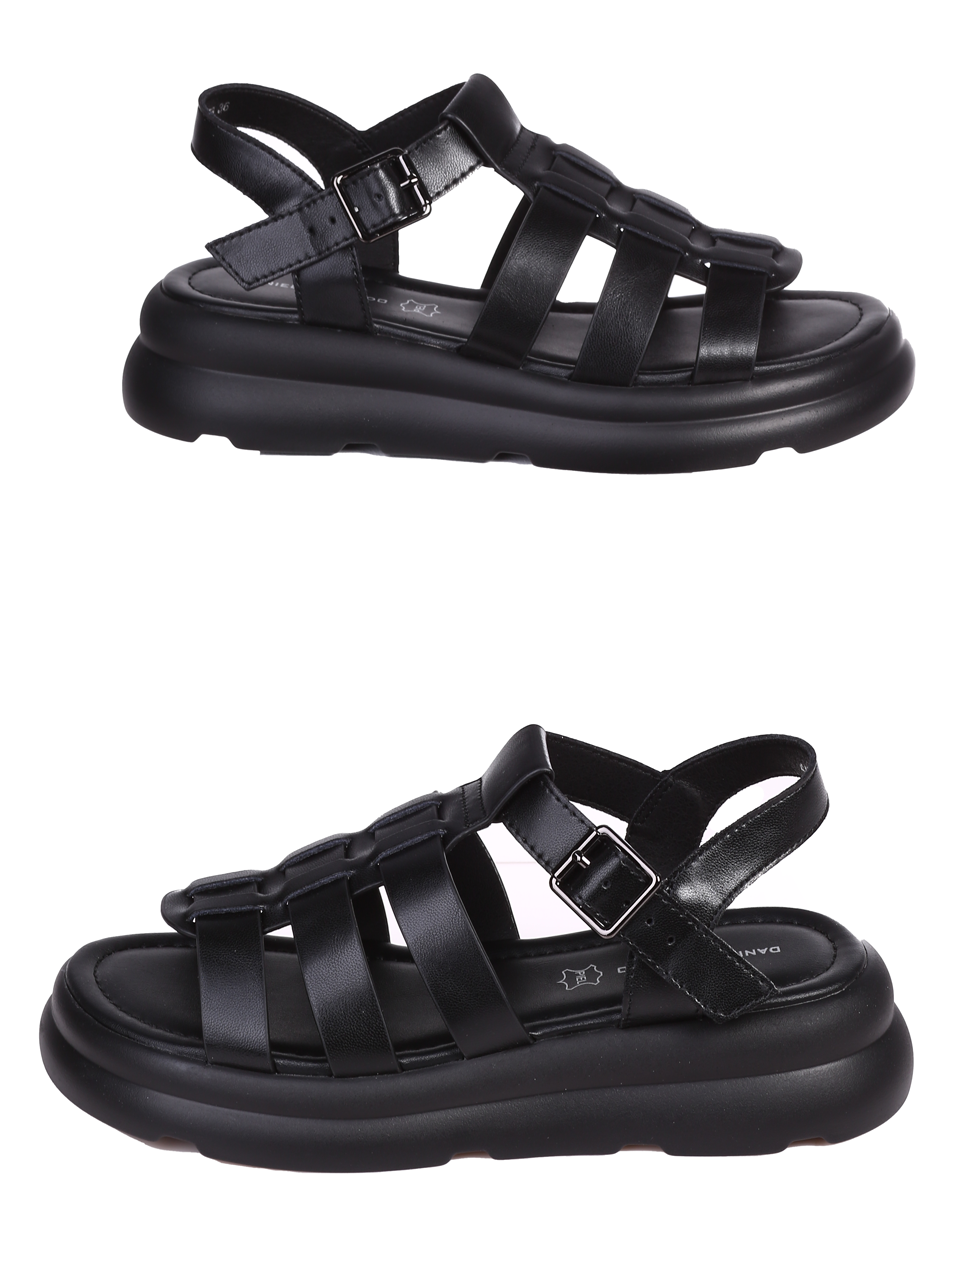 Ежедневни дамски сандали в черно 4AF-24173 black